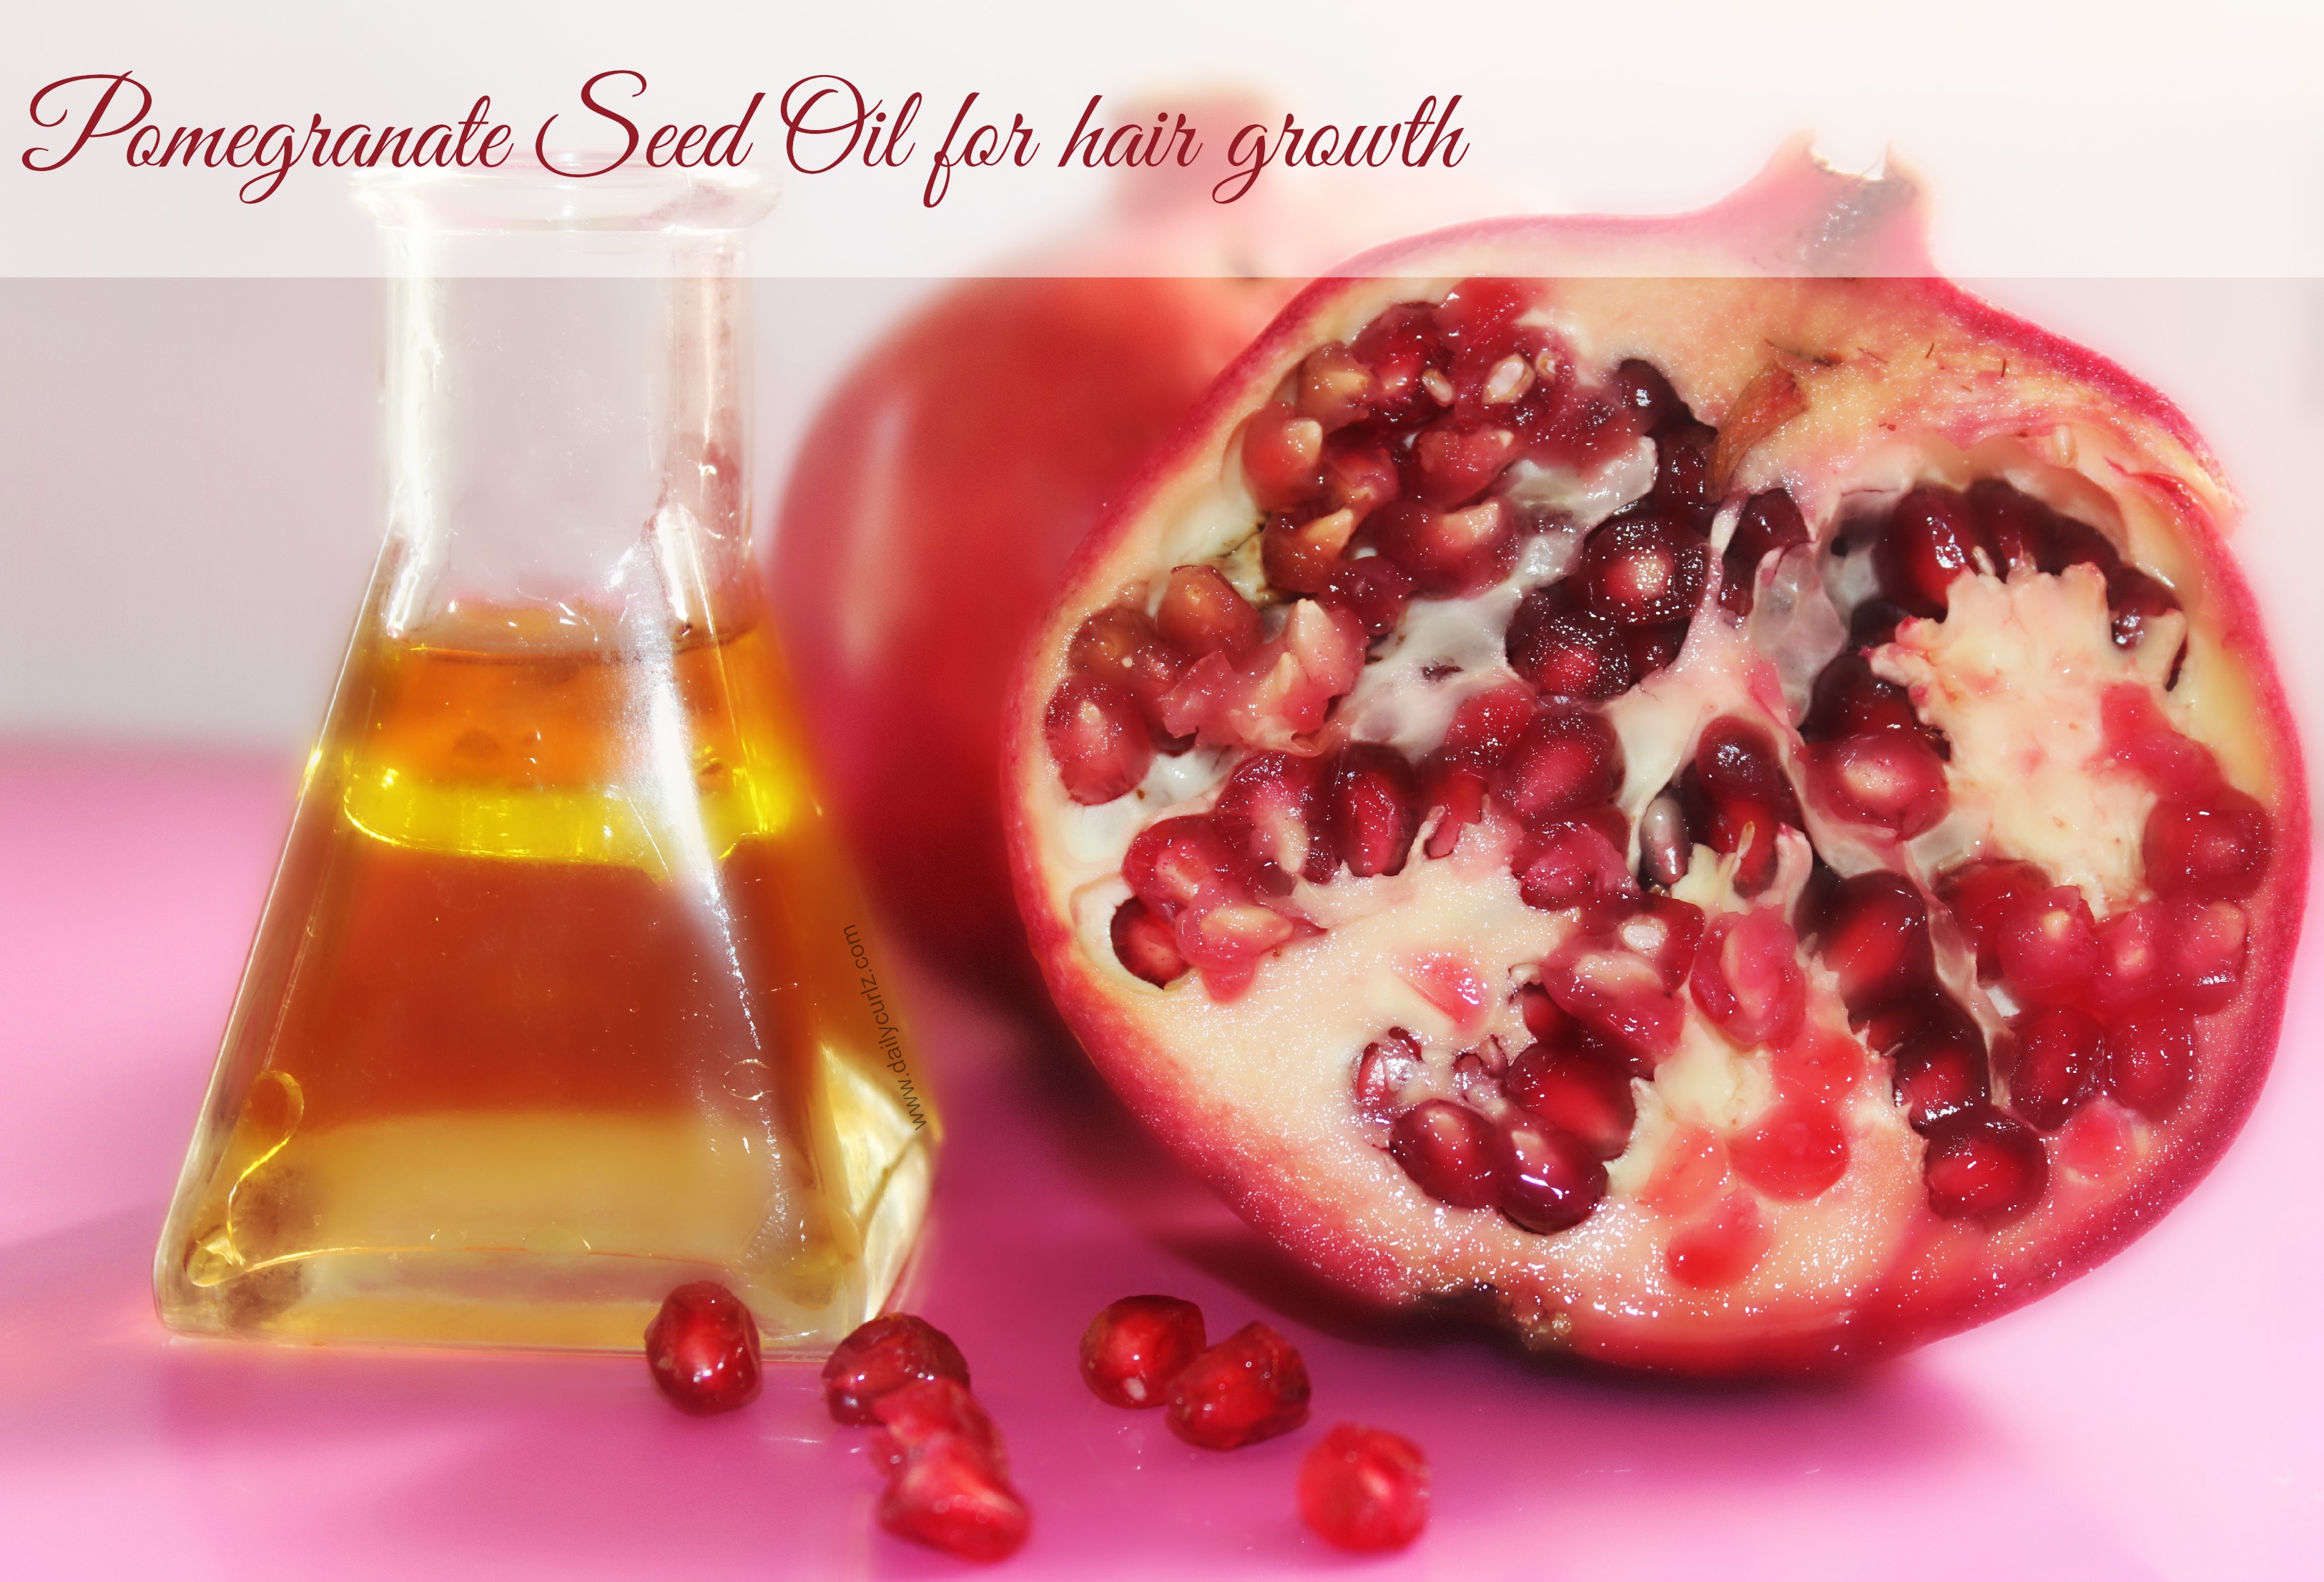 Benefits of Pomegranate Seed Oil for hair / Beneficios del aceite de semilla de granada para el cabello